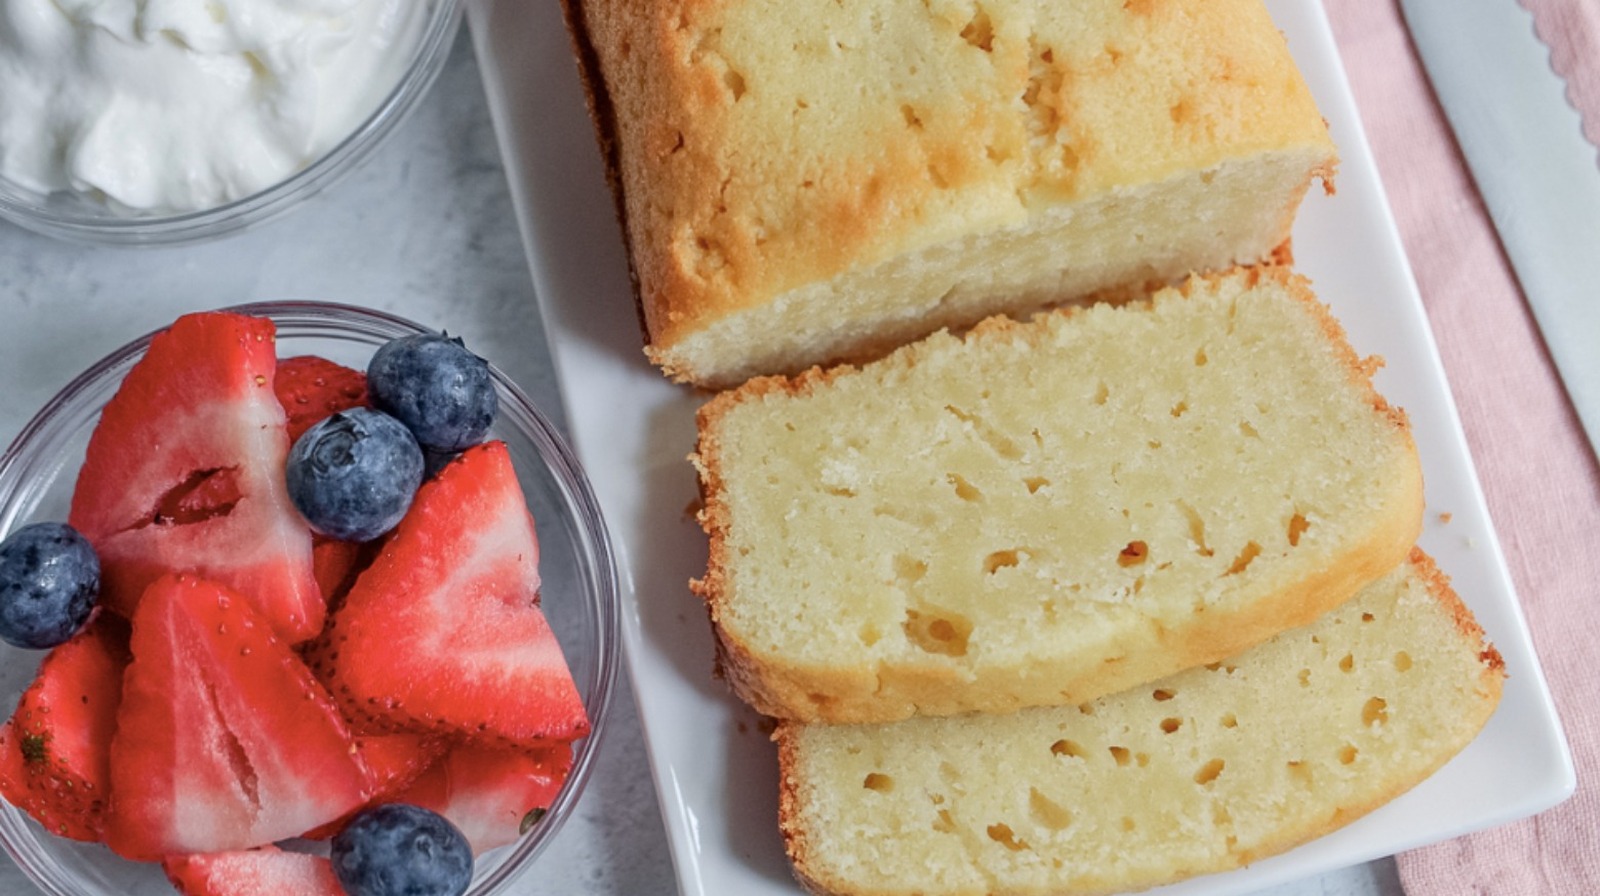 Recipe for cheesecake pound cake - The Boston Globe